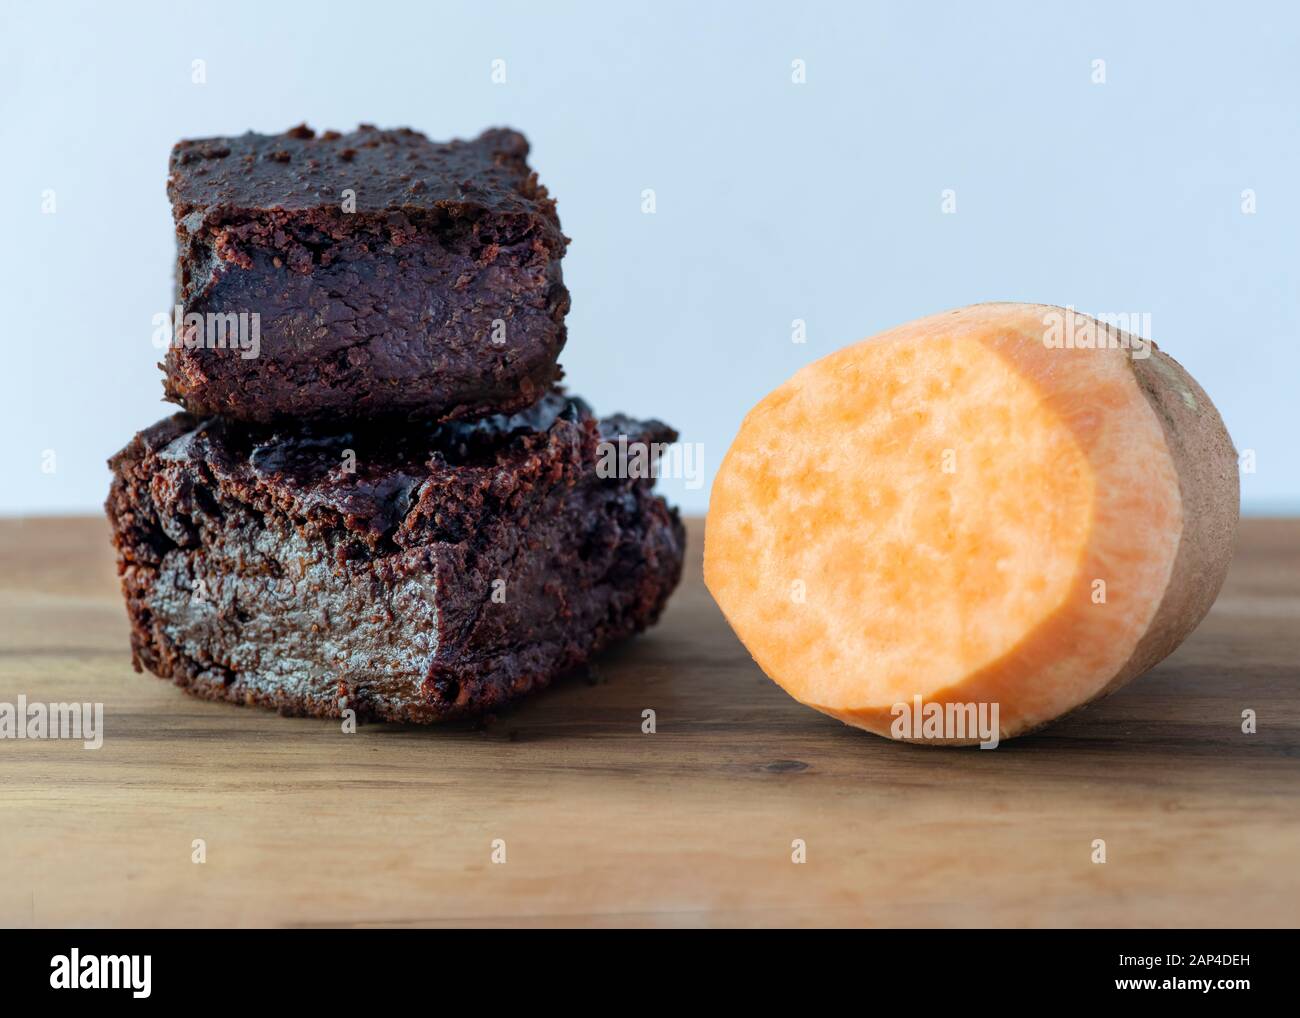 primo piano brownies di cioccolato vegano a base di piante a base di patate dolci su un piano di fondo per lo spazio copia Foto Stock